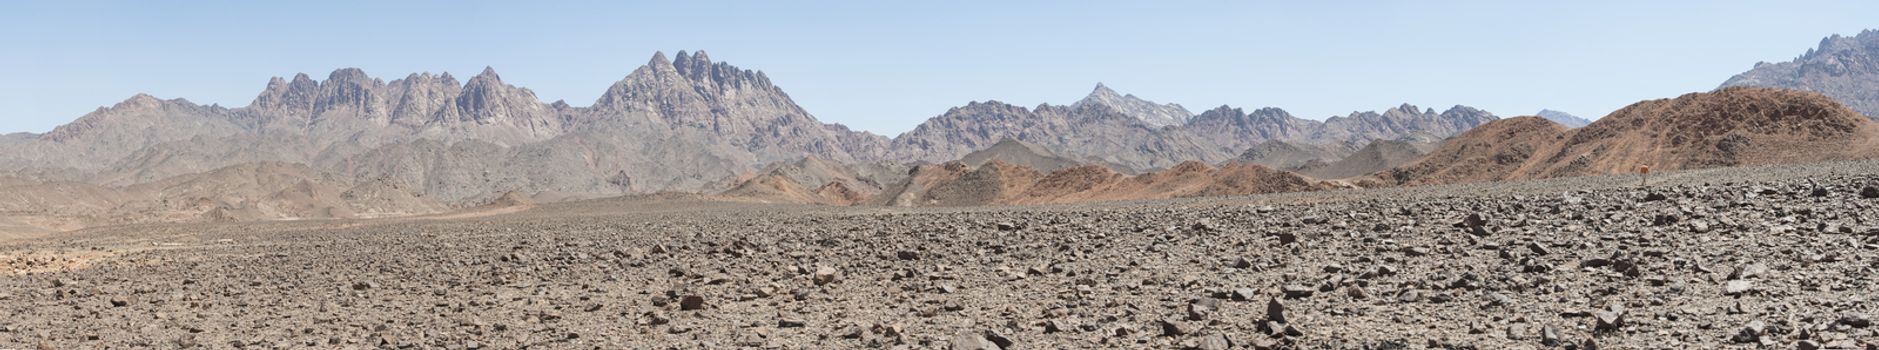 Rocky mountain slope landscape in an arid desert environment